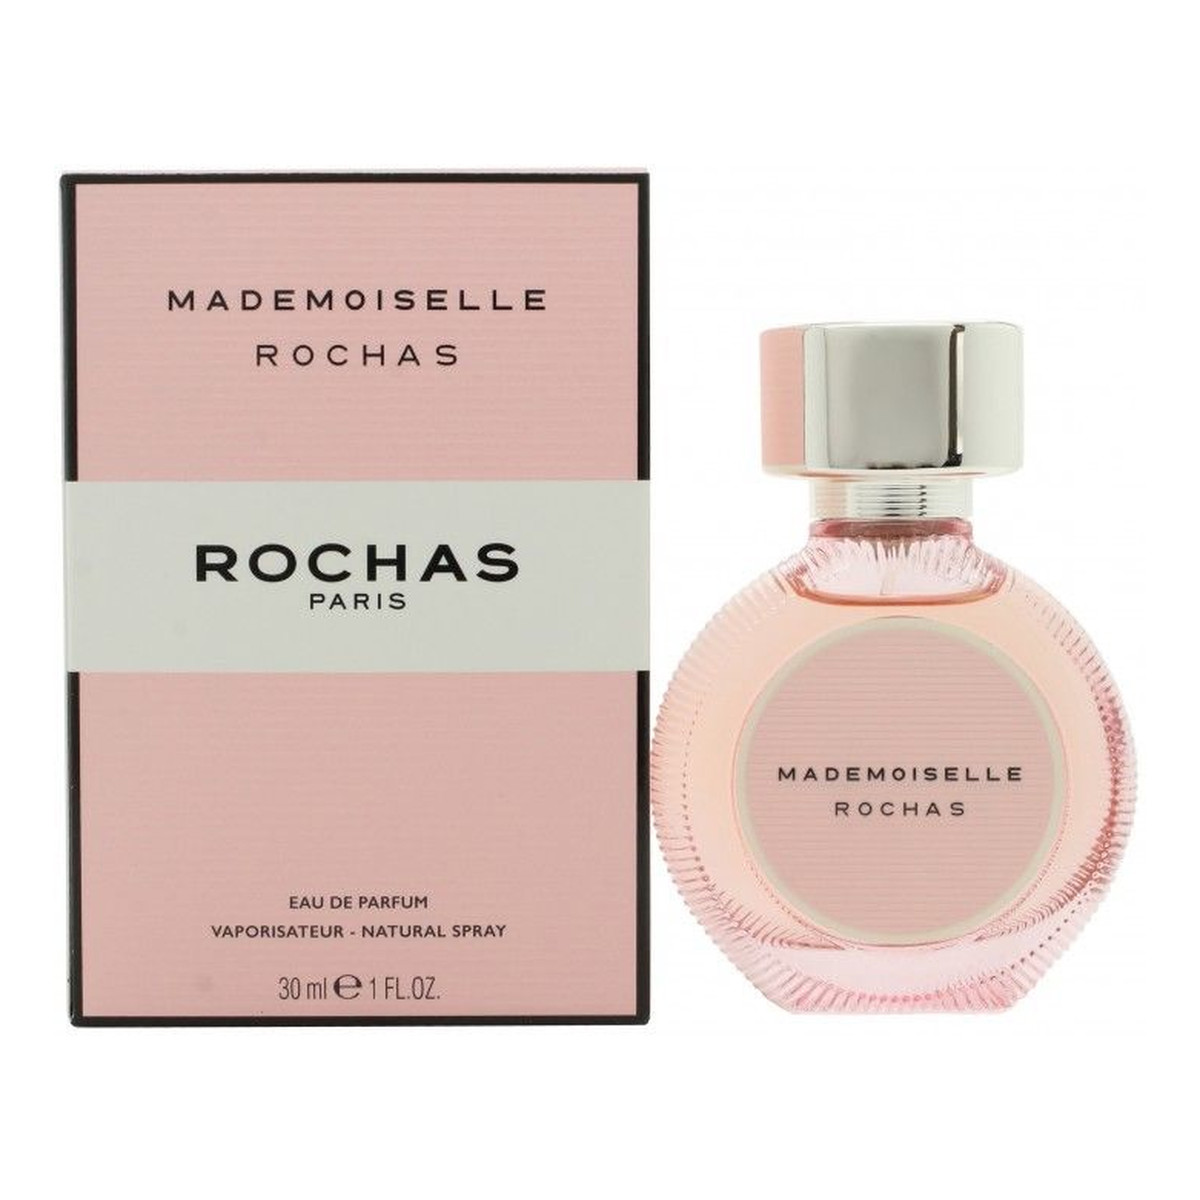 Rochas Mademoiselle Rochas Woda perfumowana 30ml